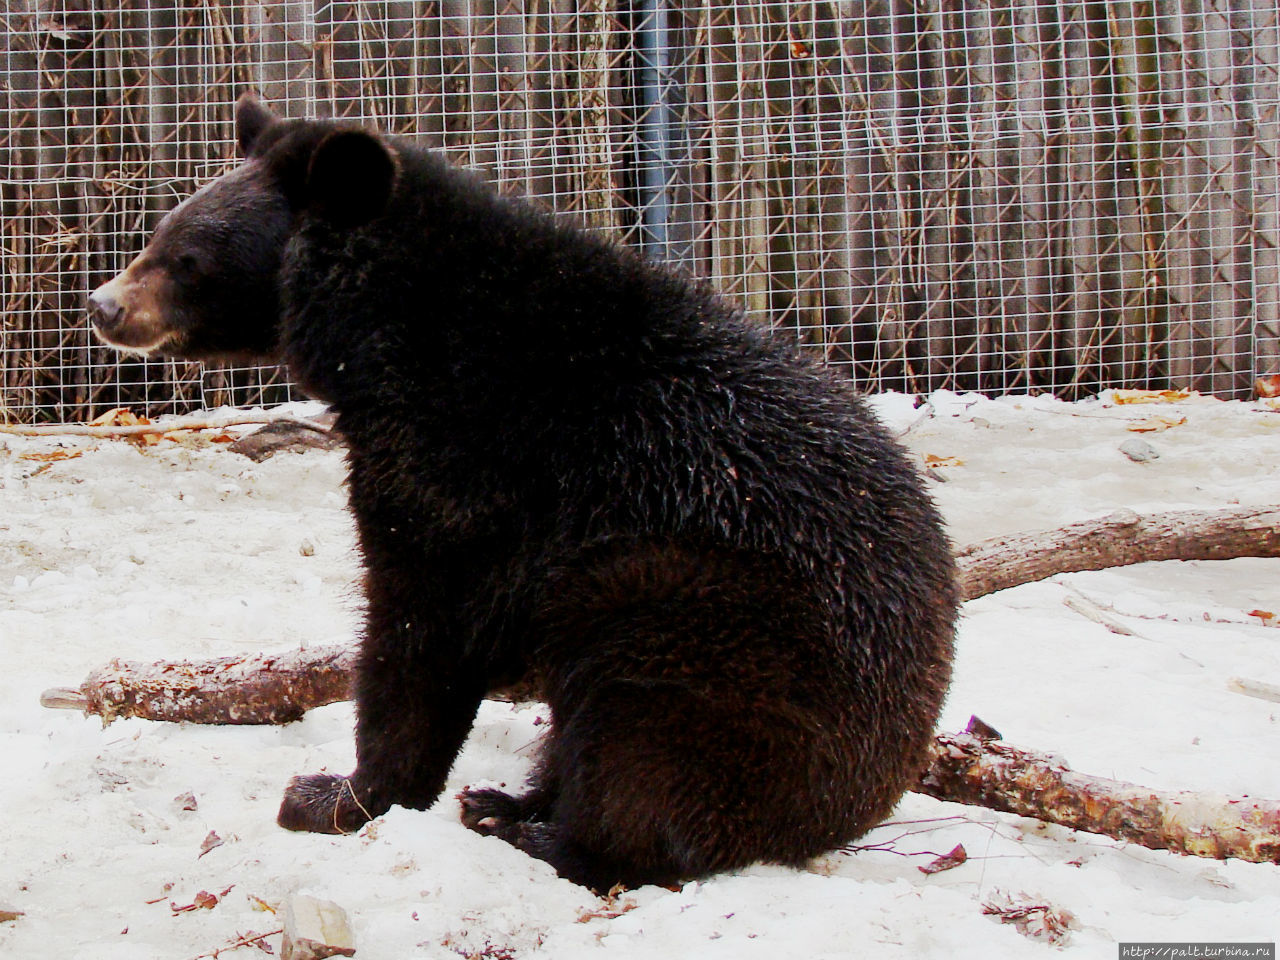 Гималайский, или черный уссурийский, медведь поменьше и постройнее бурого медведя. Но все равно этот востроносенький подросток выглядит очень внушительно Шкотово, Россия